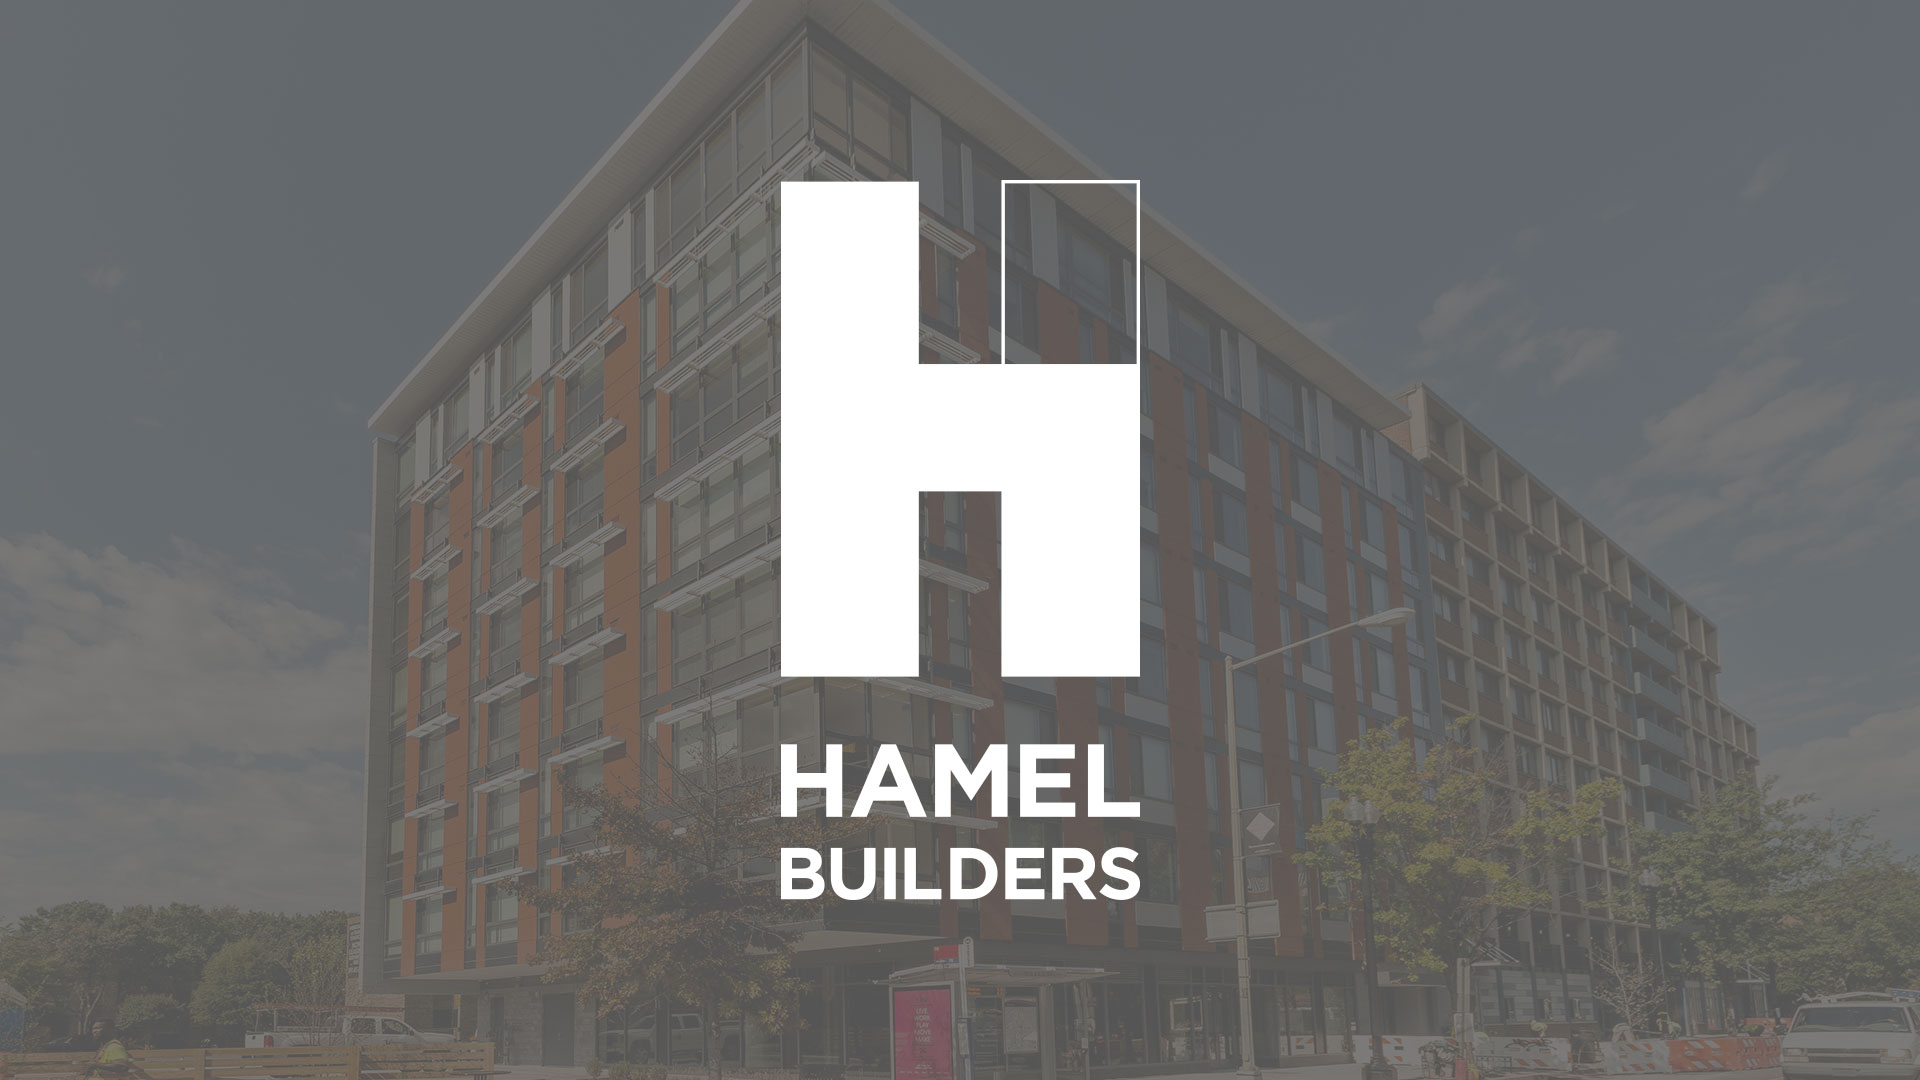 Hamel Builders - No Image